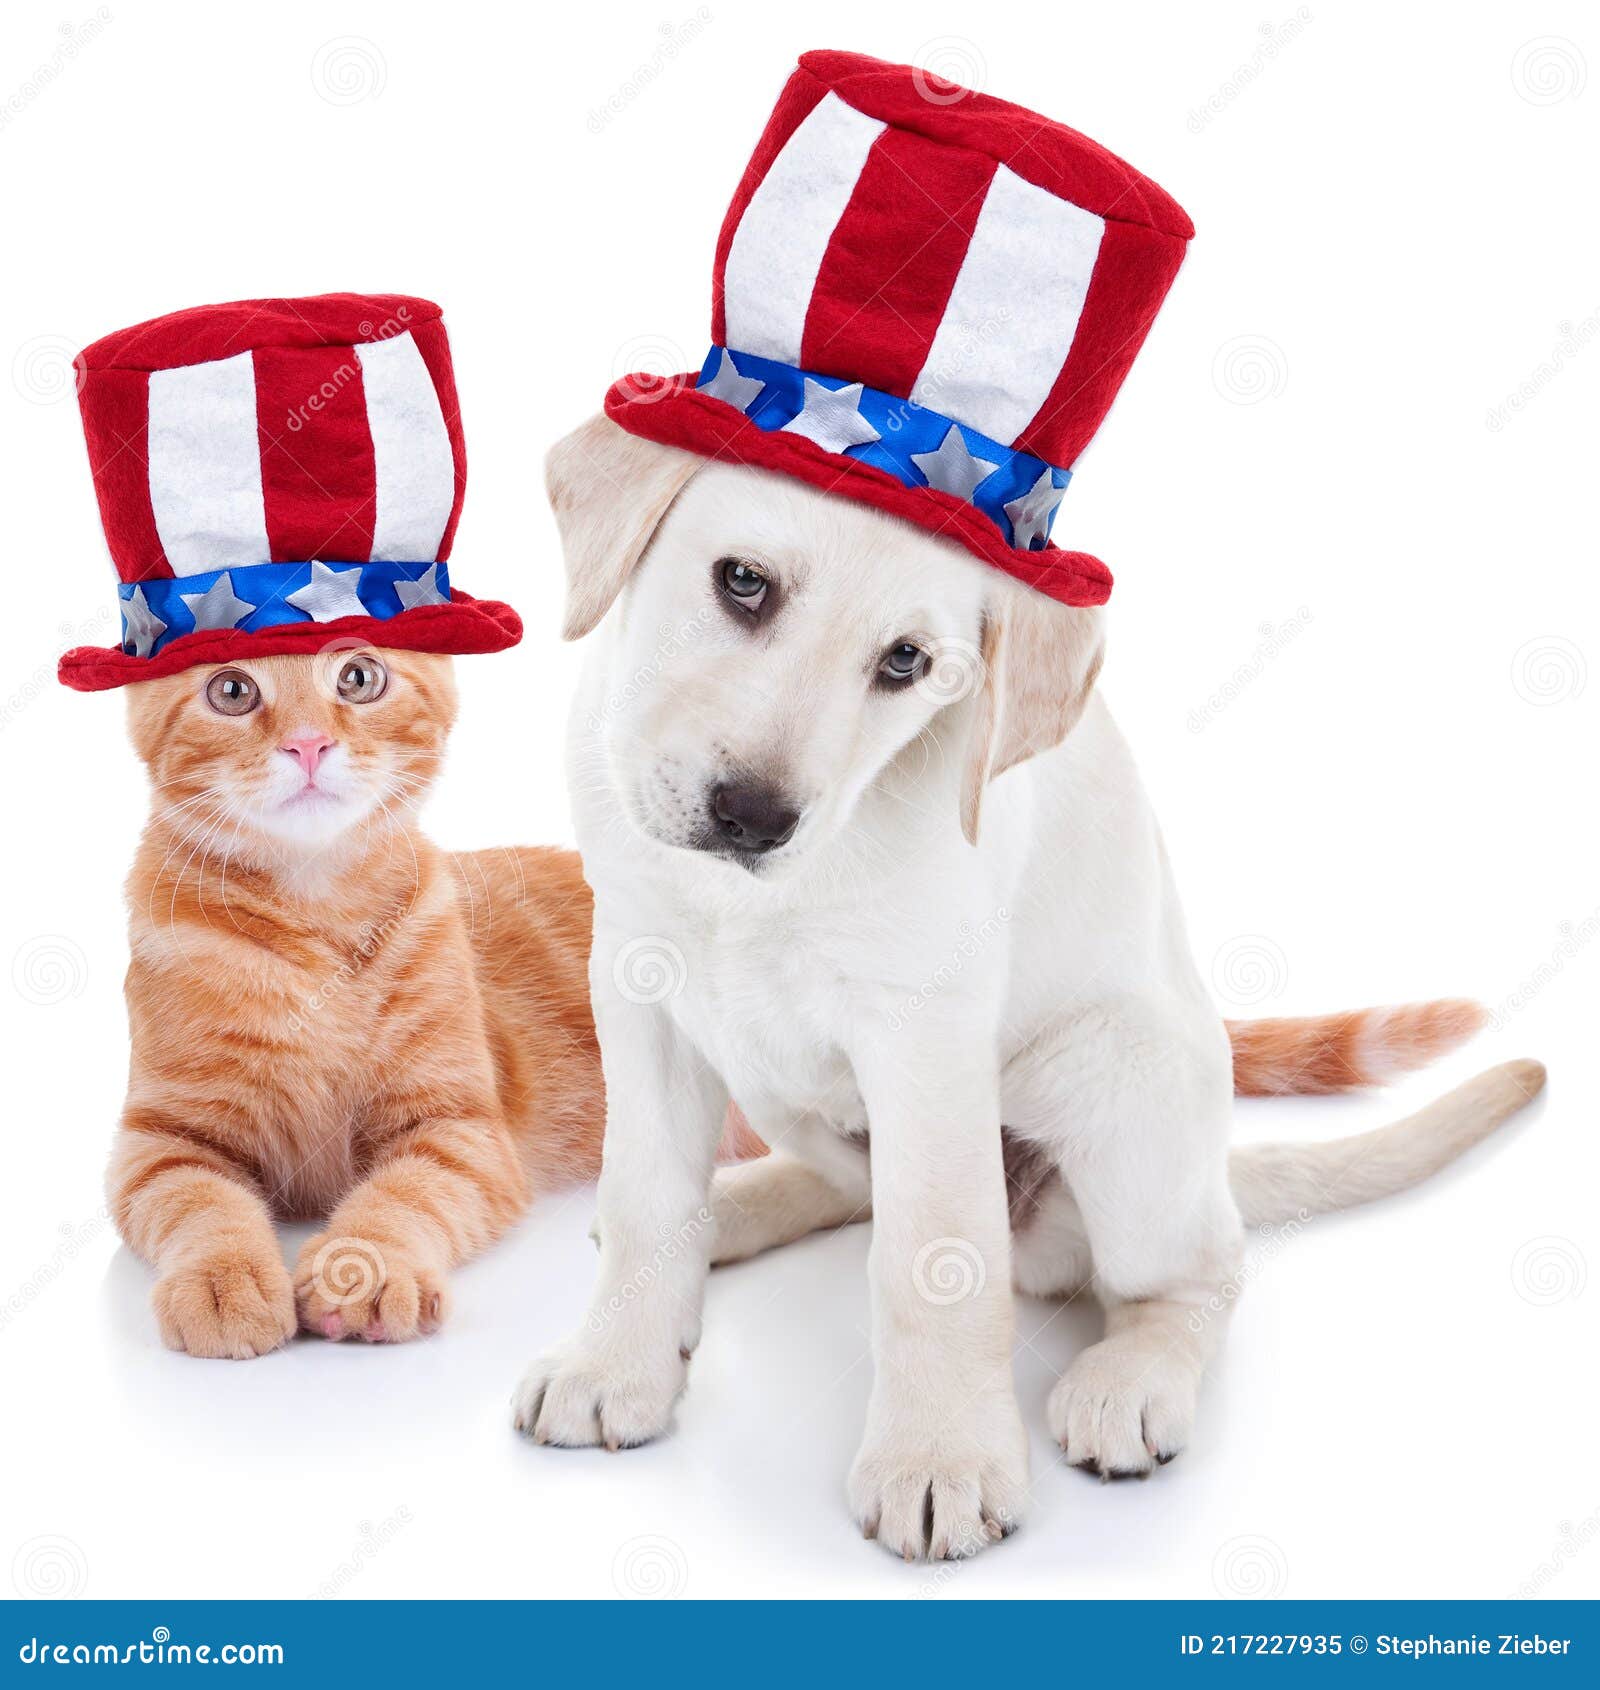 patriotic animals